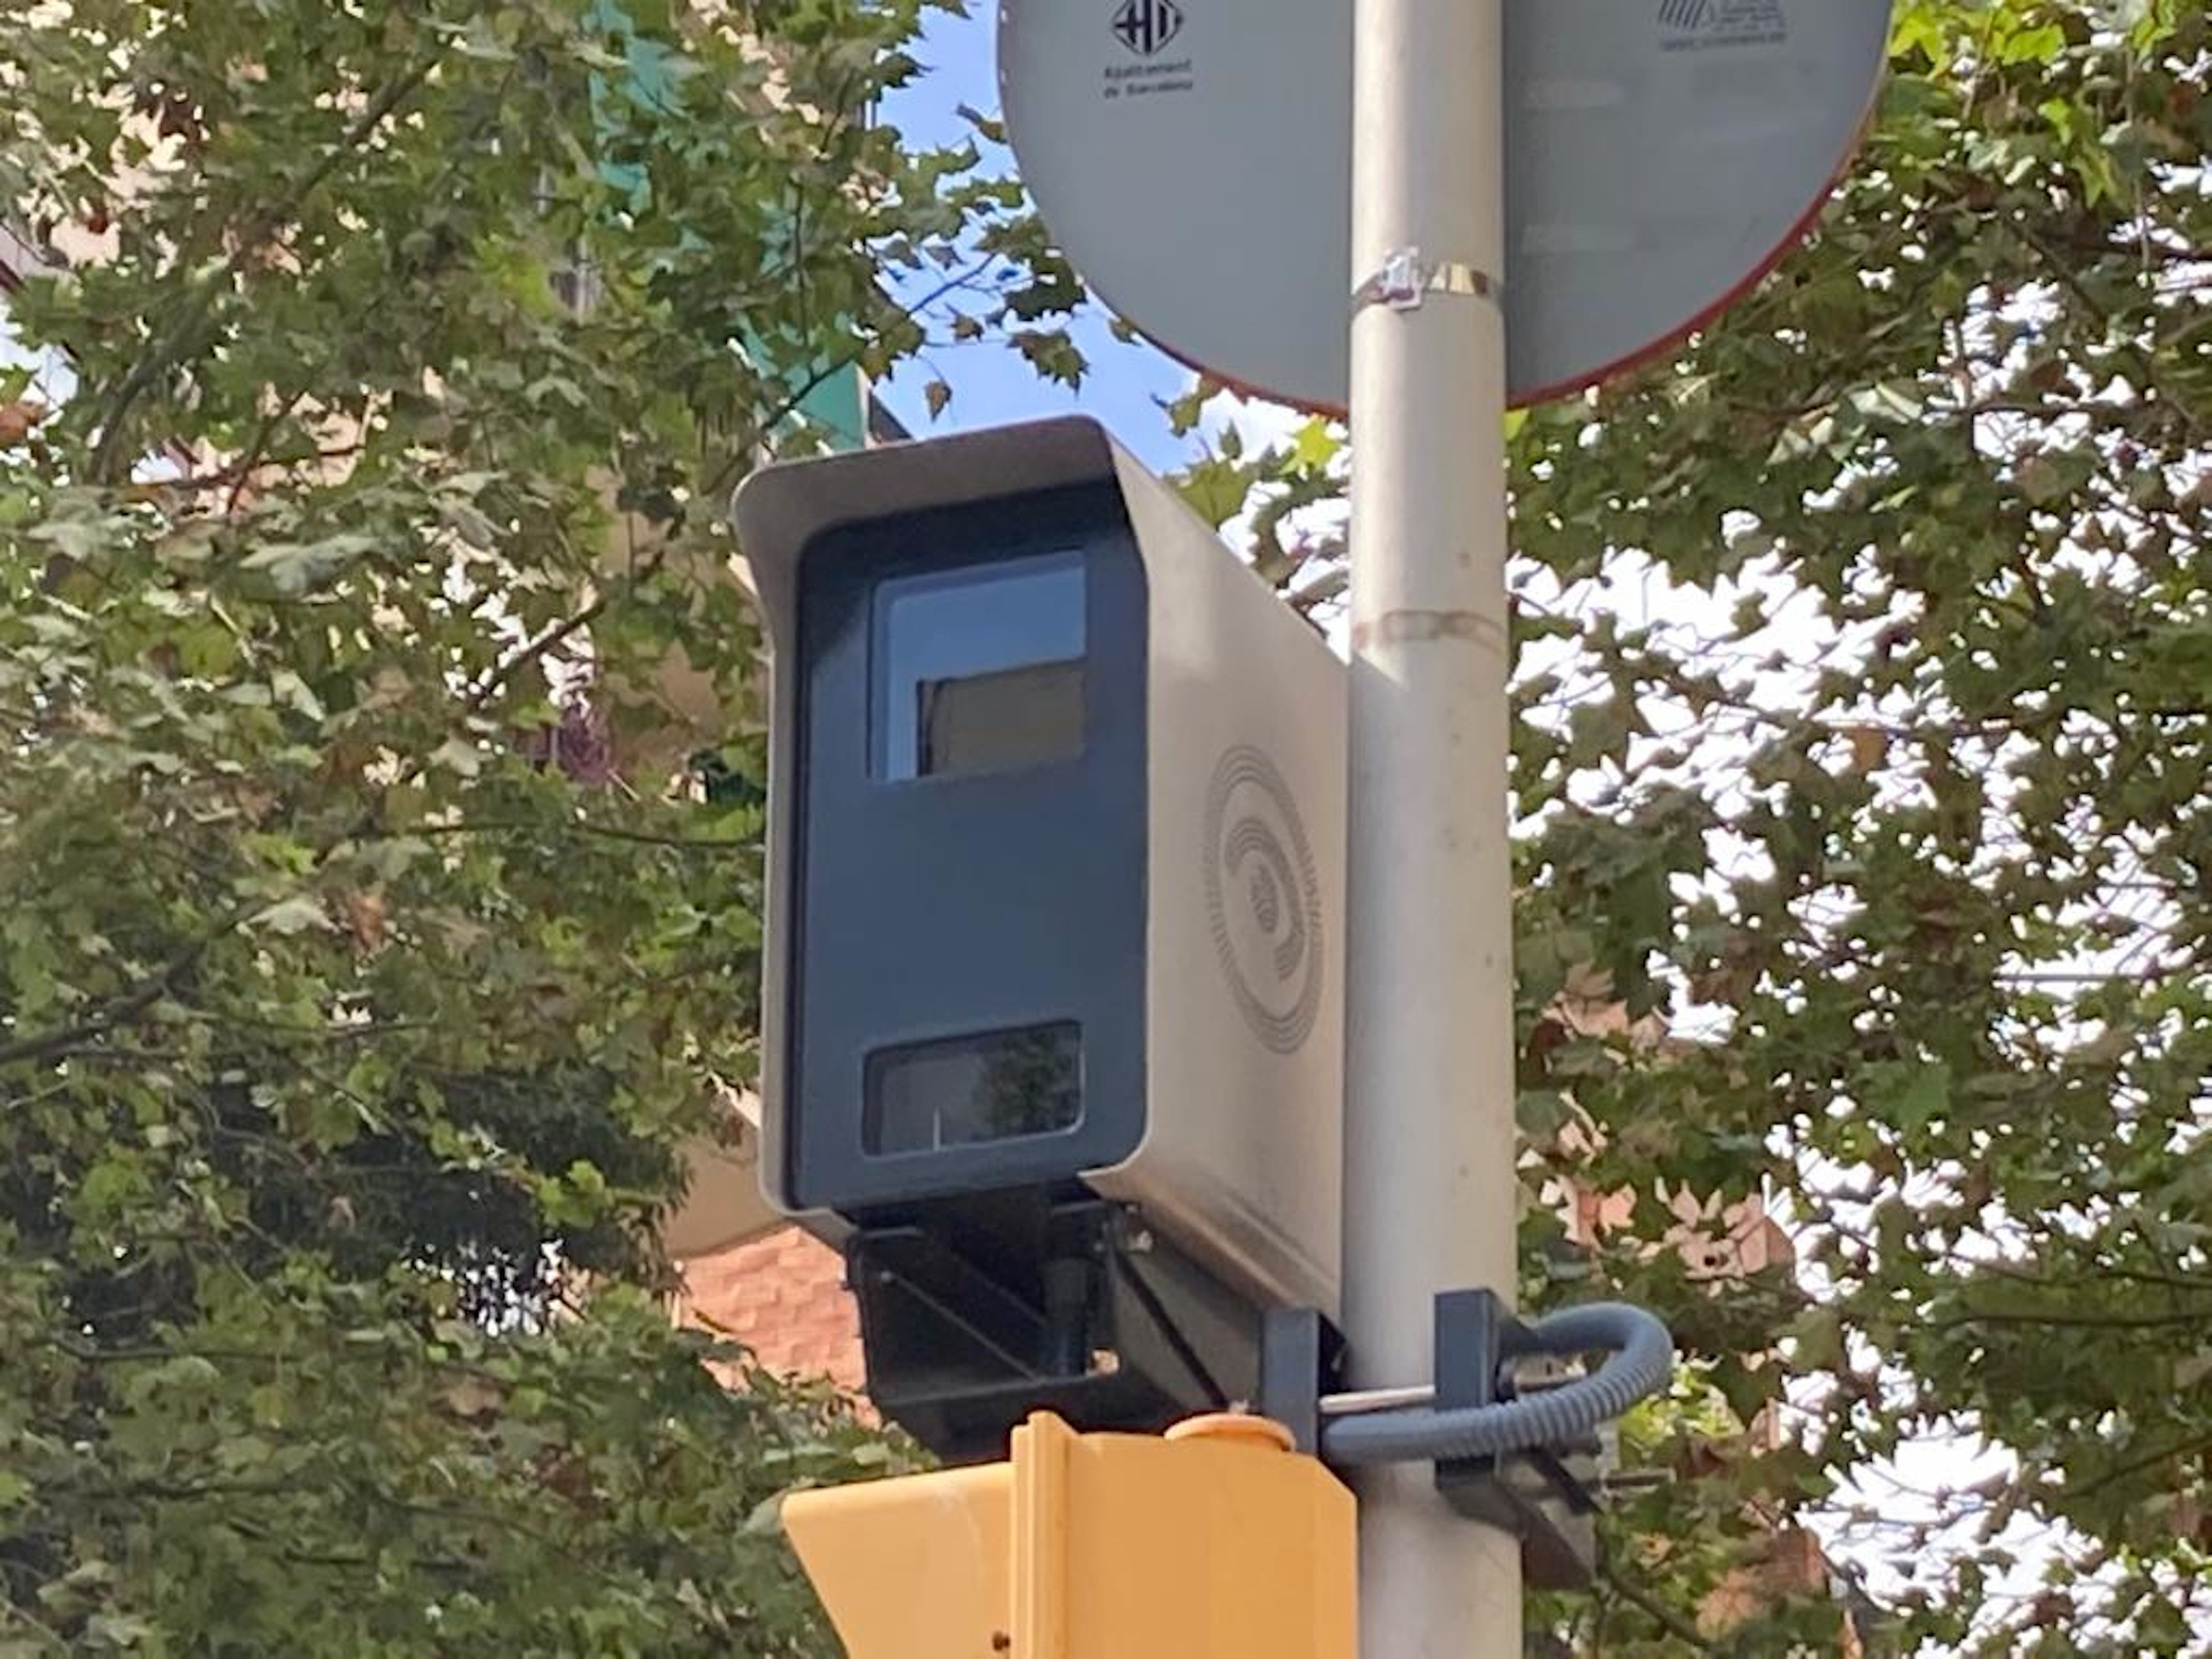 Els nous radars de Barcelona multen a un ritme de gairebé 700 multes al dia